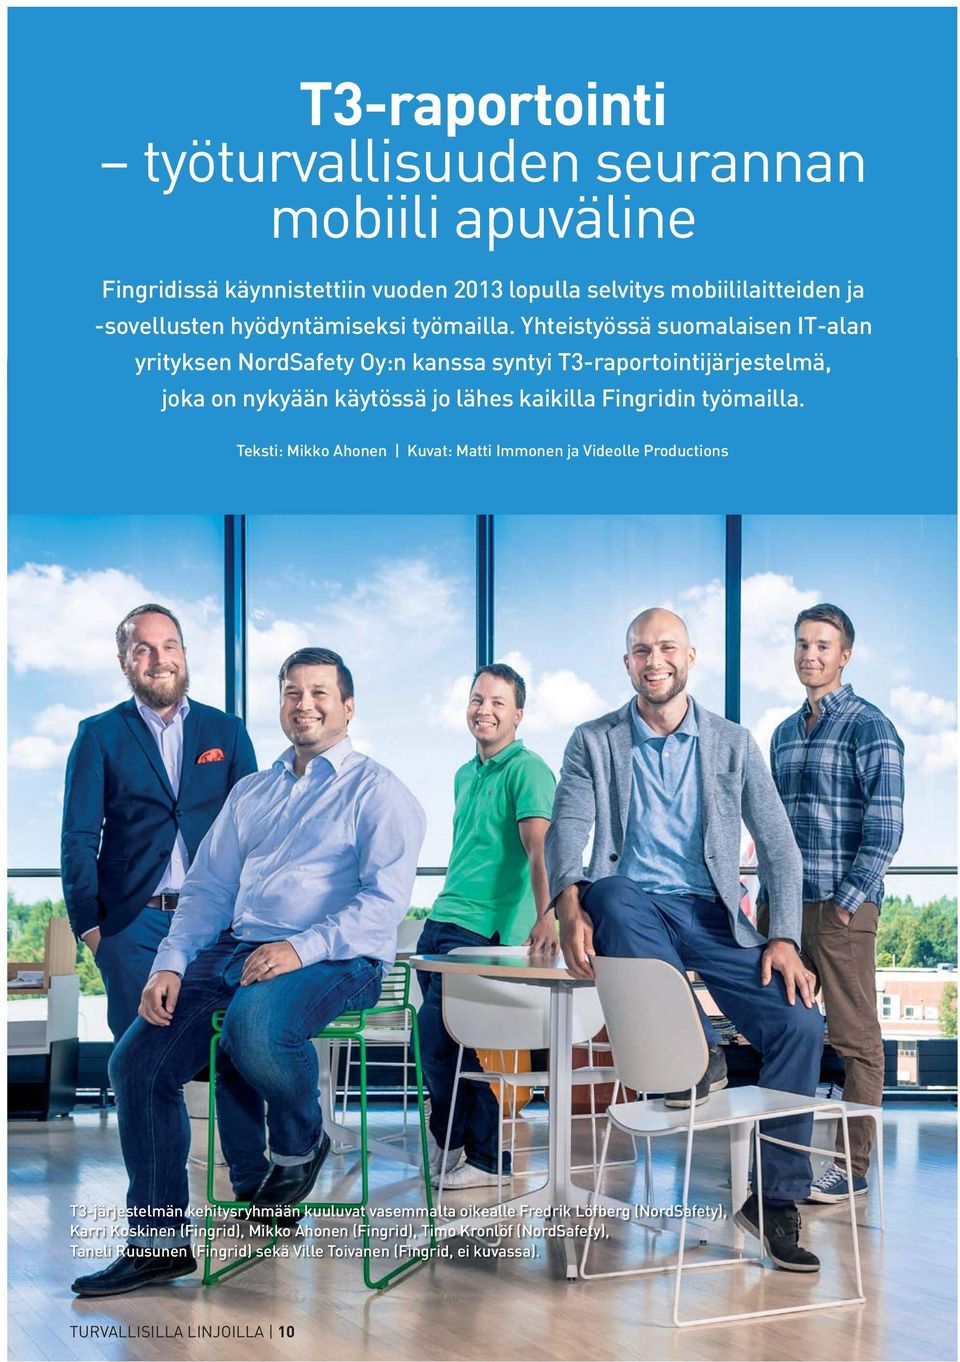 Yhteistyössä suomalaisen IT-alan yrityksen NordSafety Oy:n kanssa syntyi T3-raportointijärjestelmä, joka on nykyään käytössä jo lähes kaikilla Fingridin  Teksti: Mikko